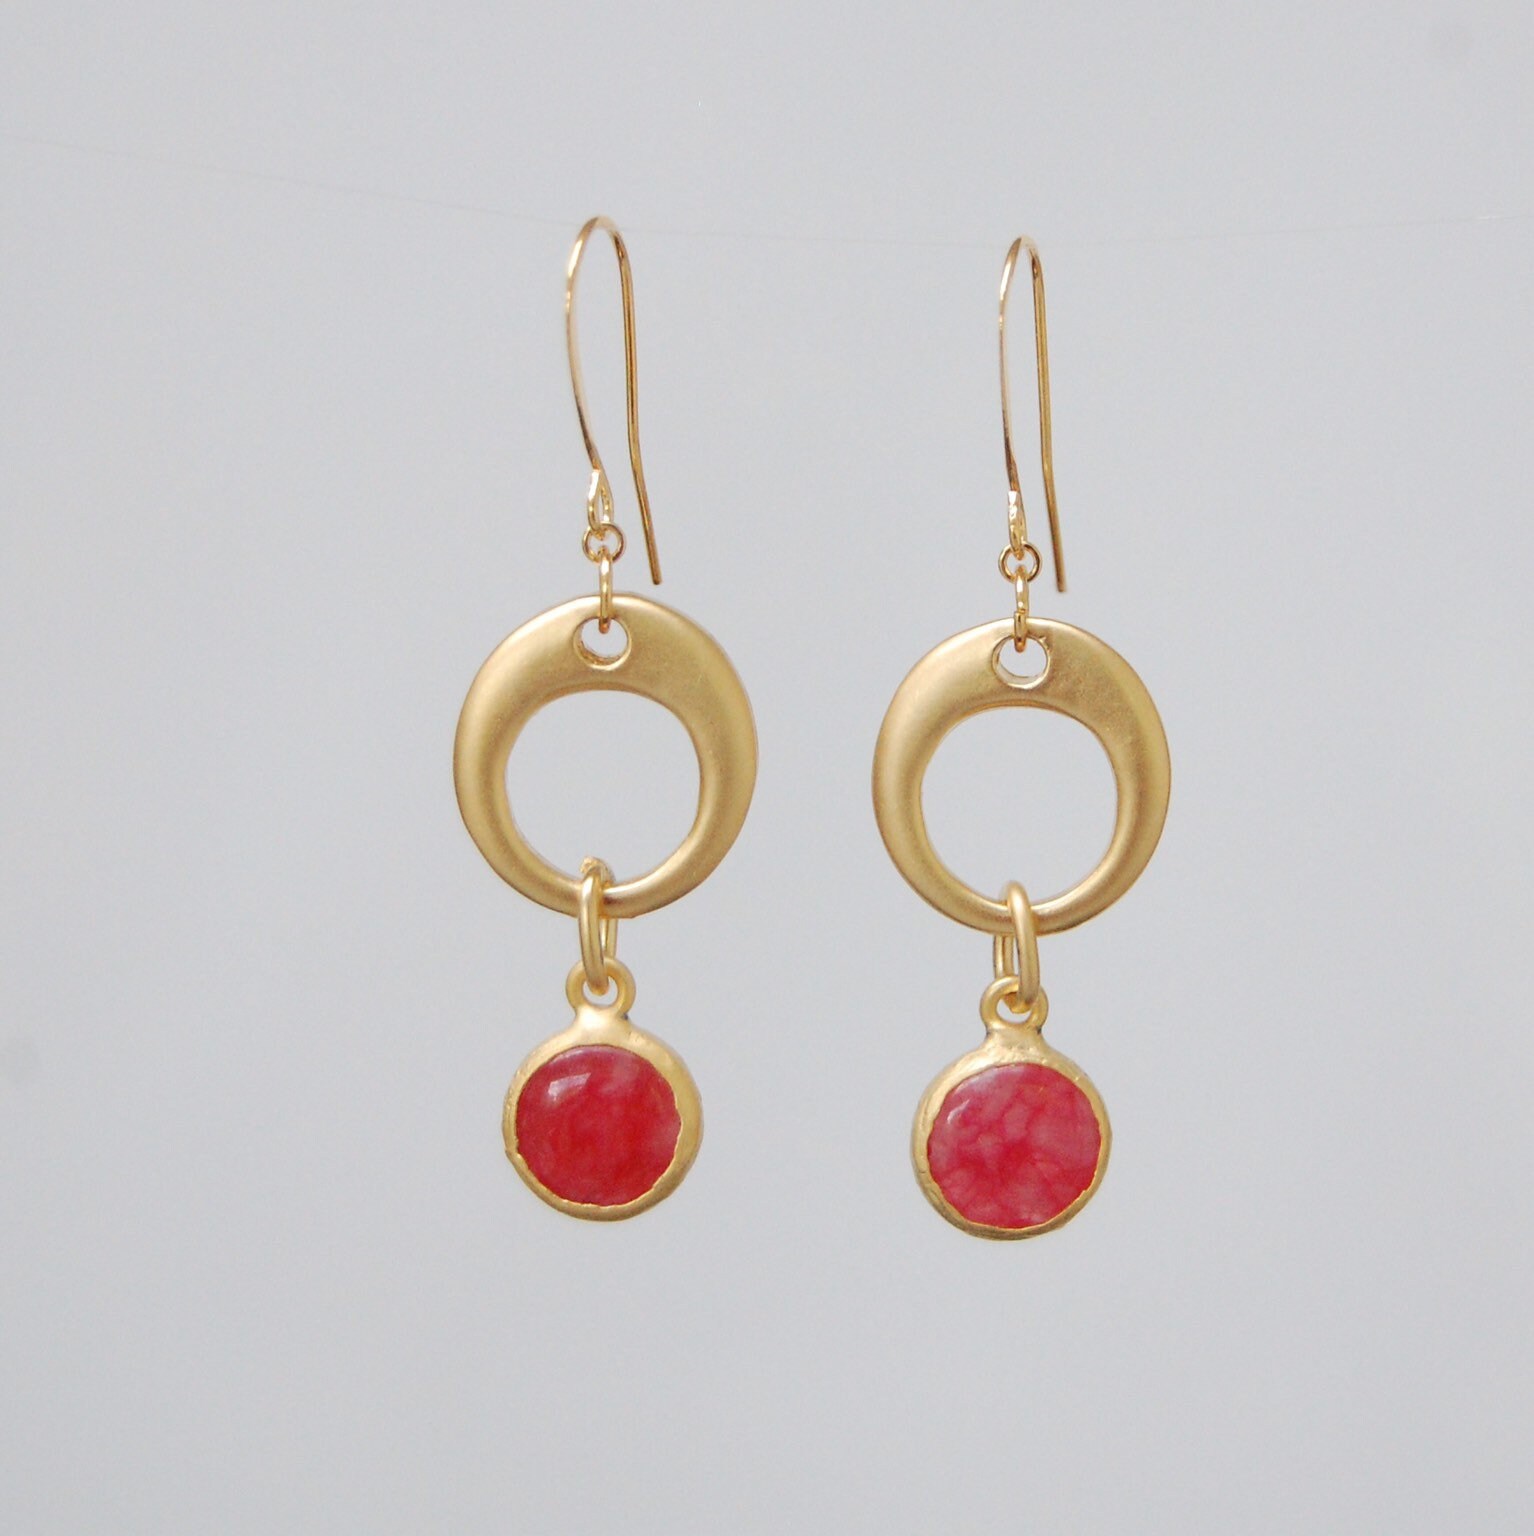 Red jade earrings elegant gold earrings unusual earrings | Etsy